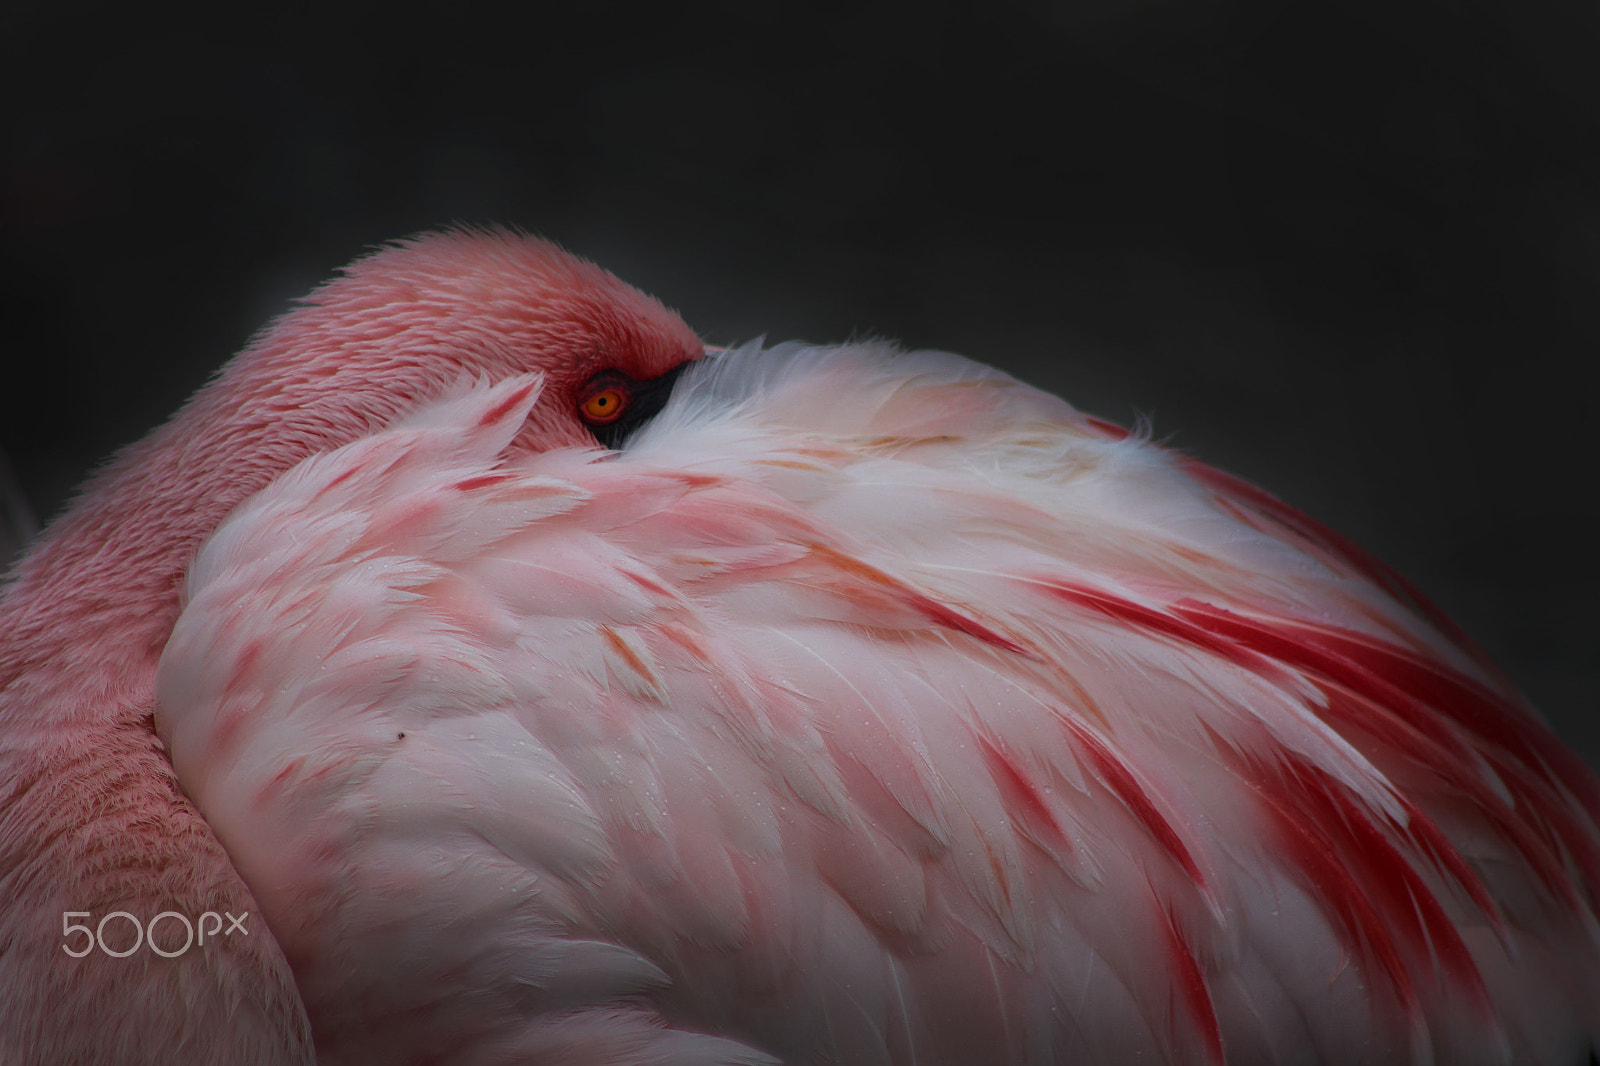 Canon EOS 100D (EOS Rebel SL1 / EOS Kiss X7) sample photo. Flamingo pose photography